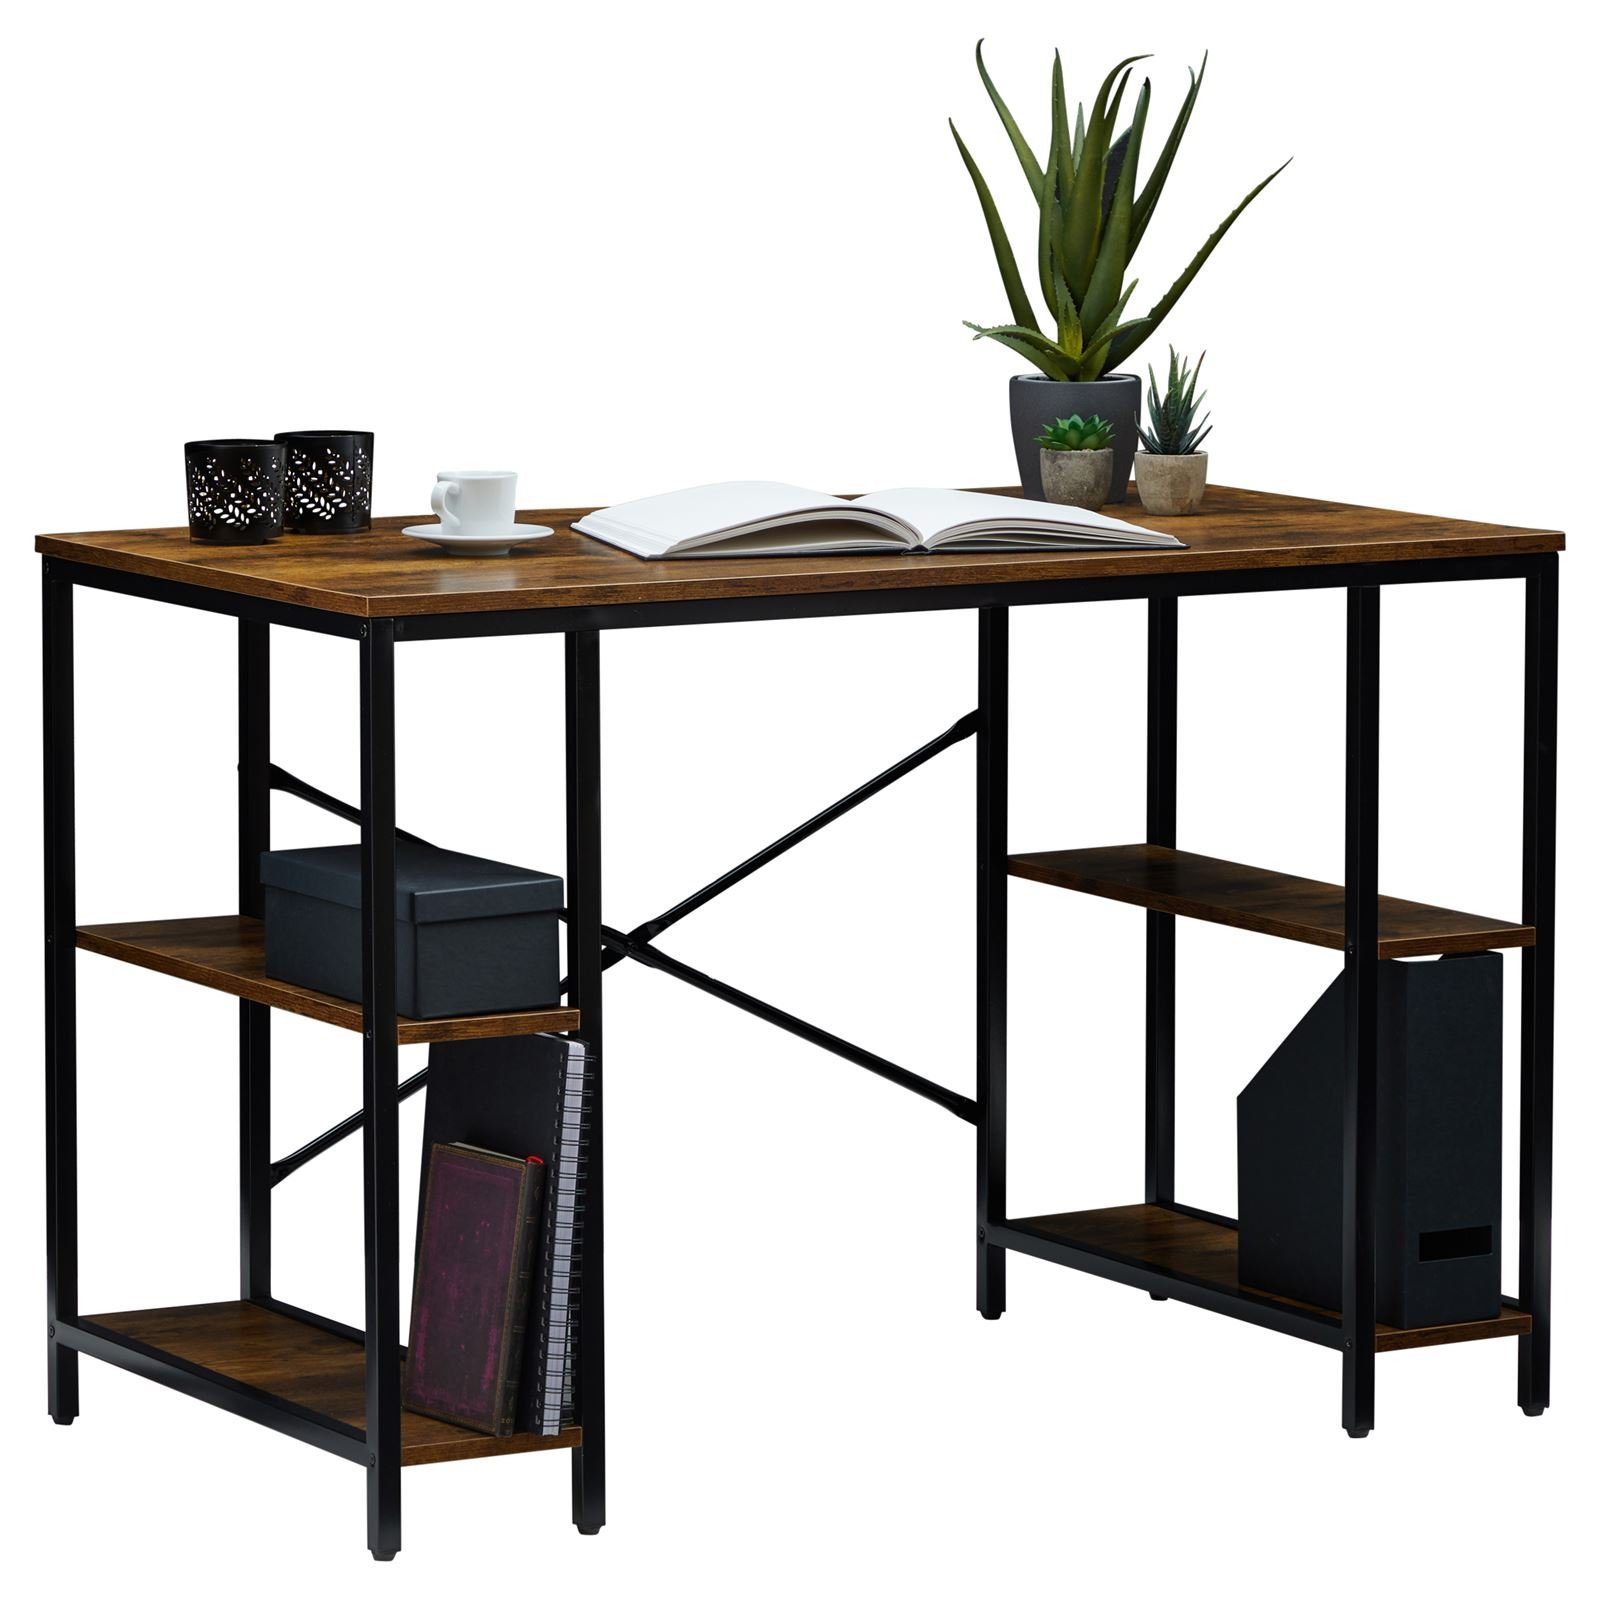 CARO-Möbel Schreibtisch EVORA, Schreibtisch Industrial Stil aus Metall in schwarz und MDF in braun 4 Vintage/schwarz